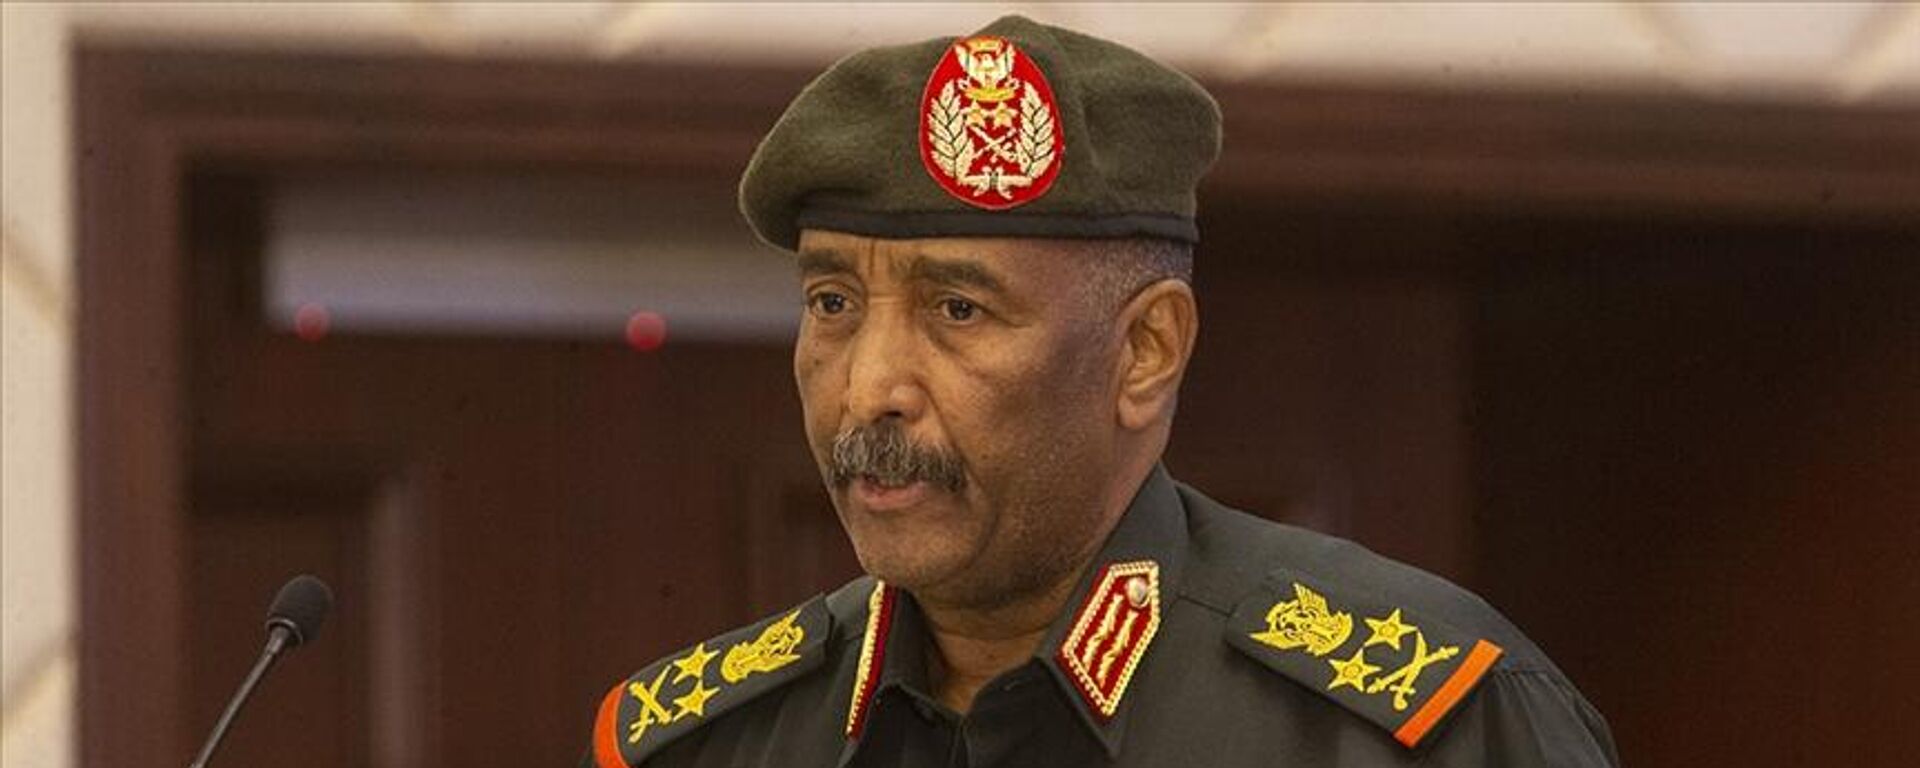 Sudan Egemenlik Konseyi Başkanı ve Ordu Komutanı Orgeneral Abdulfettah El Burhan, askerin siyaset arenasından çekilmeye kararlı olduğunu ve silahlı kuvvetlerin seçimlerle gelen sivil otoriteye tabi olacağına inandıklarını söyledi. - Sputnik Türkiye, 1920, 17.04.2023